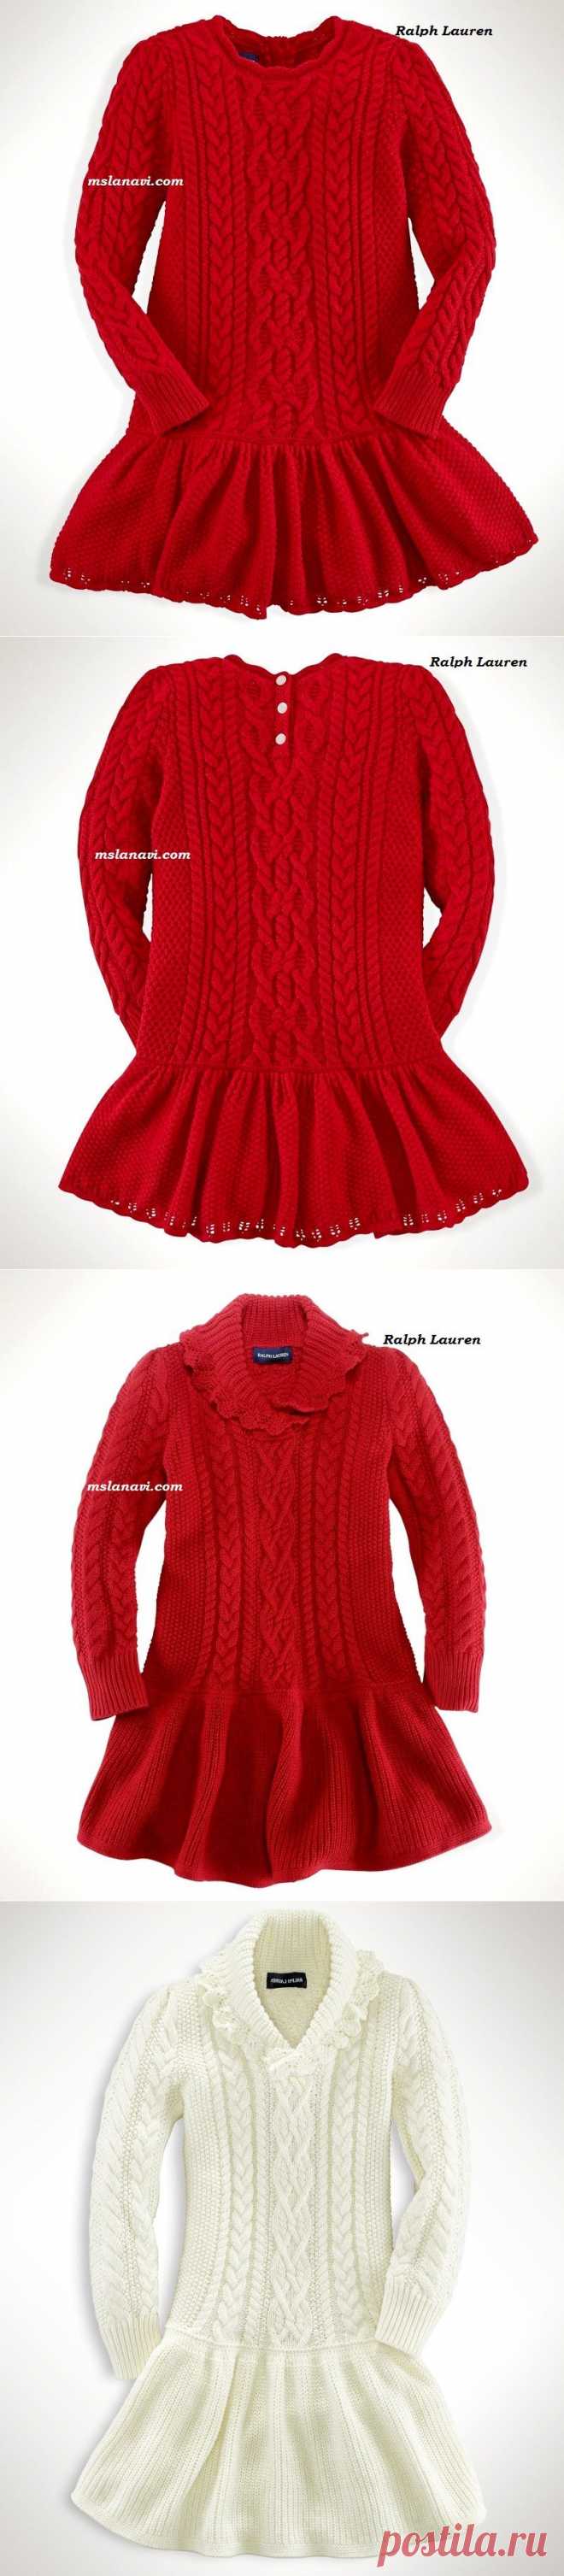 Вяжем с Ланой » Красивые вязаные платья для девочек от Ralph Lauren